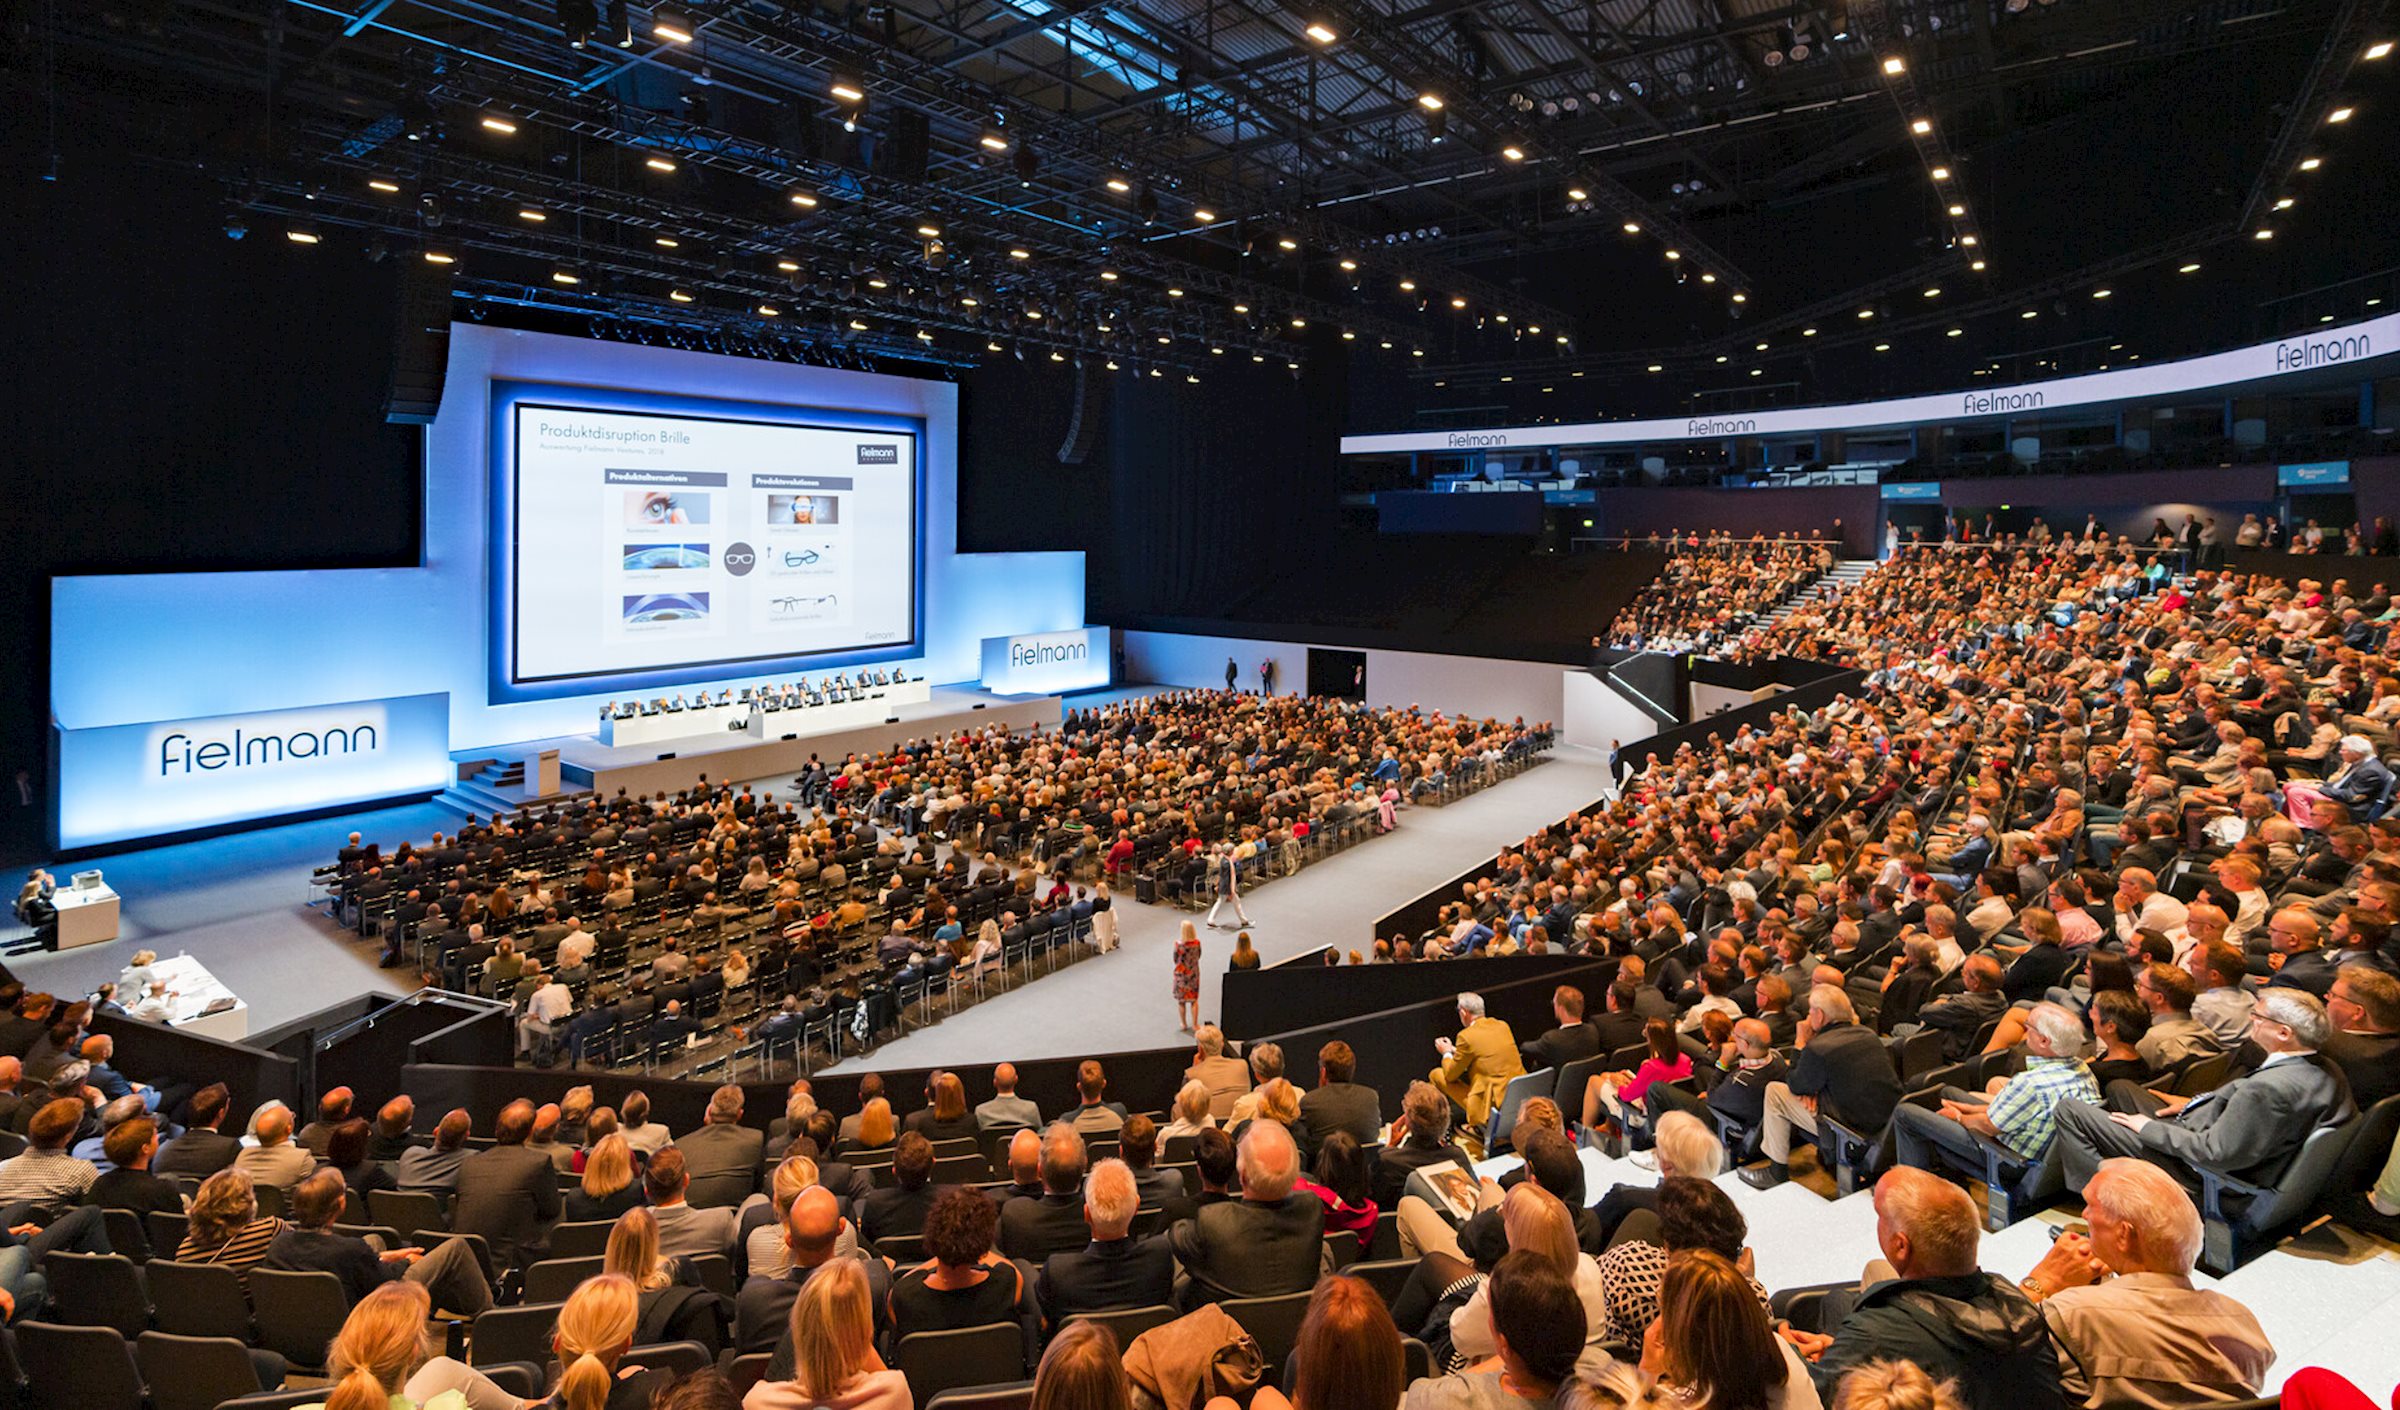 La réunion annuelle 2019 de Fielmann a eu lieu à la Barclaycard Arena de Hambourg - l'équipe créative de PRG a conçu un concept de salle et l'a présenté avec les visualisations correspondantes.